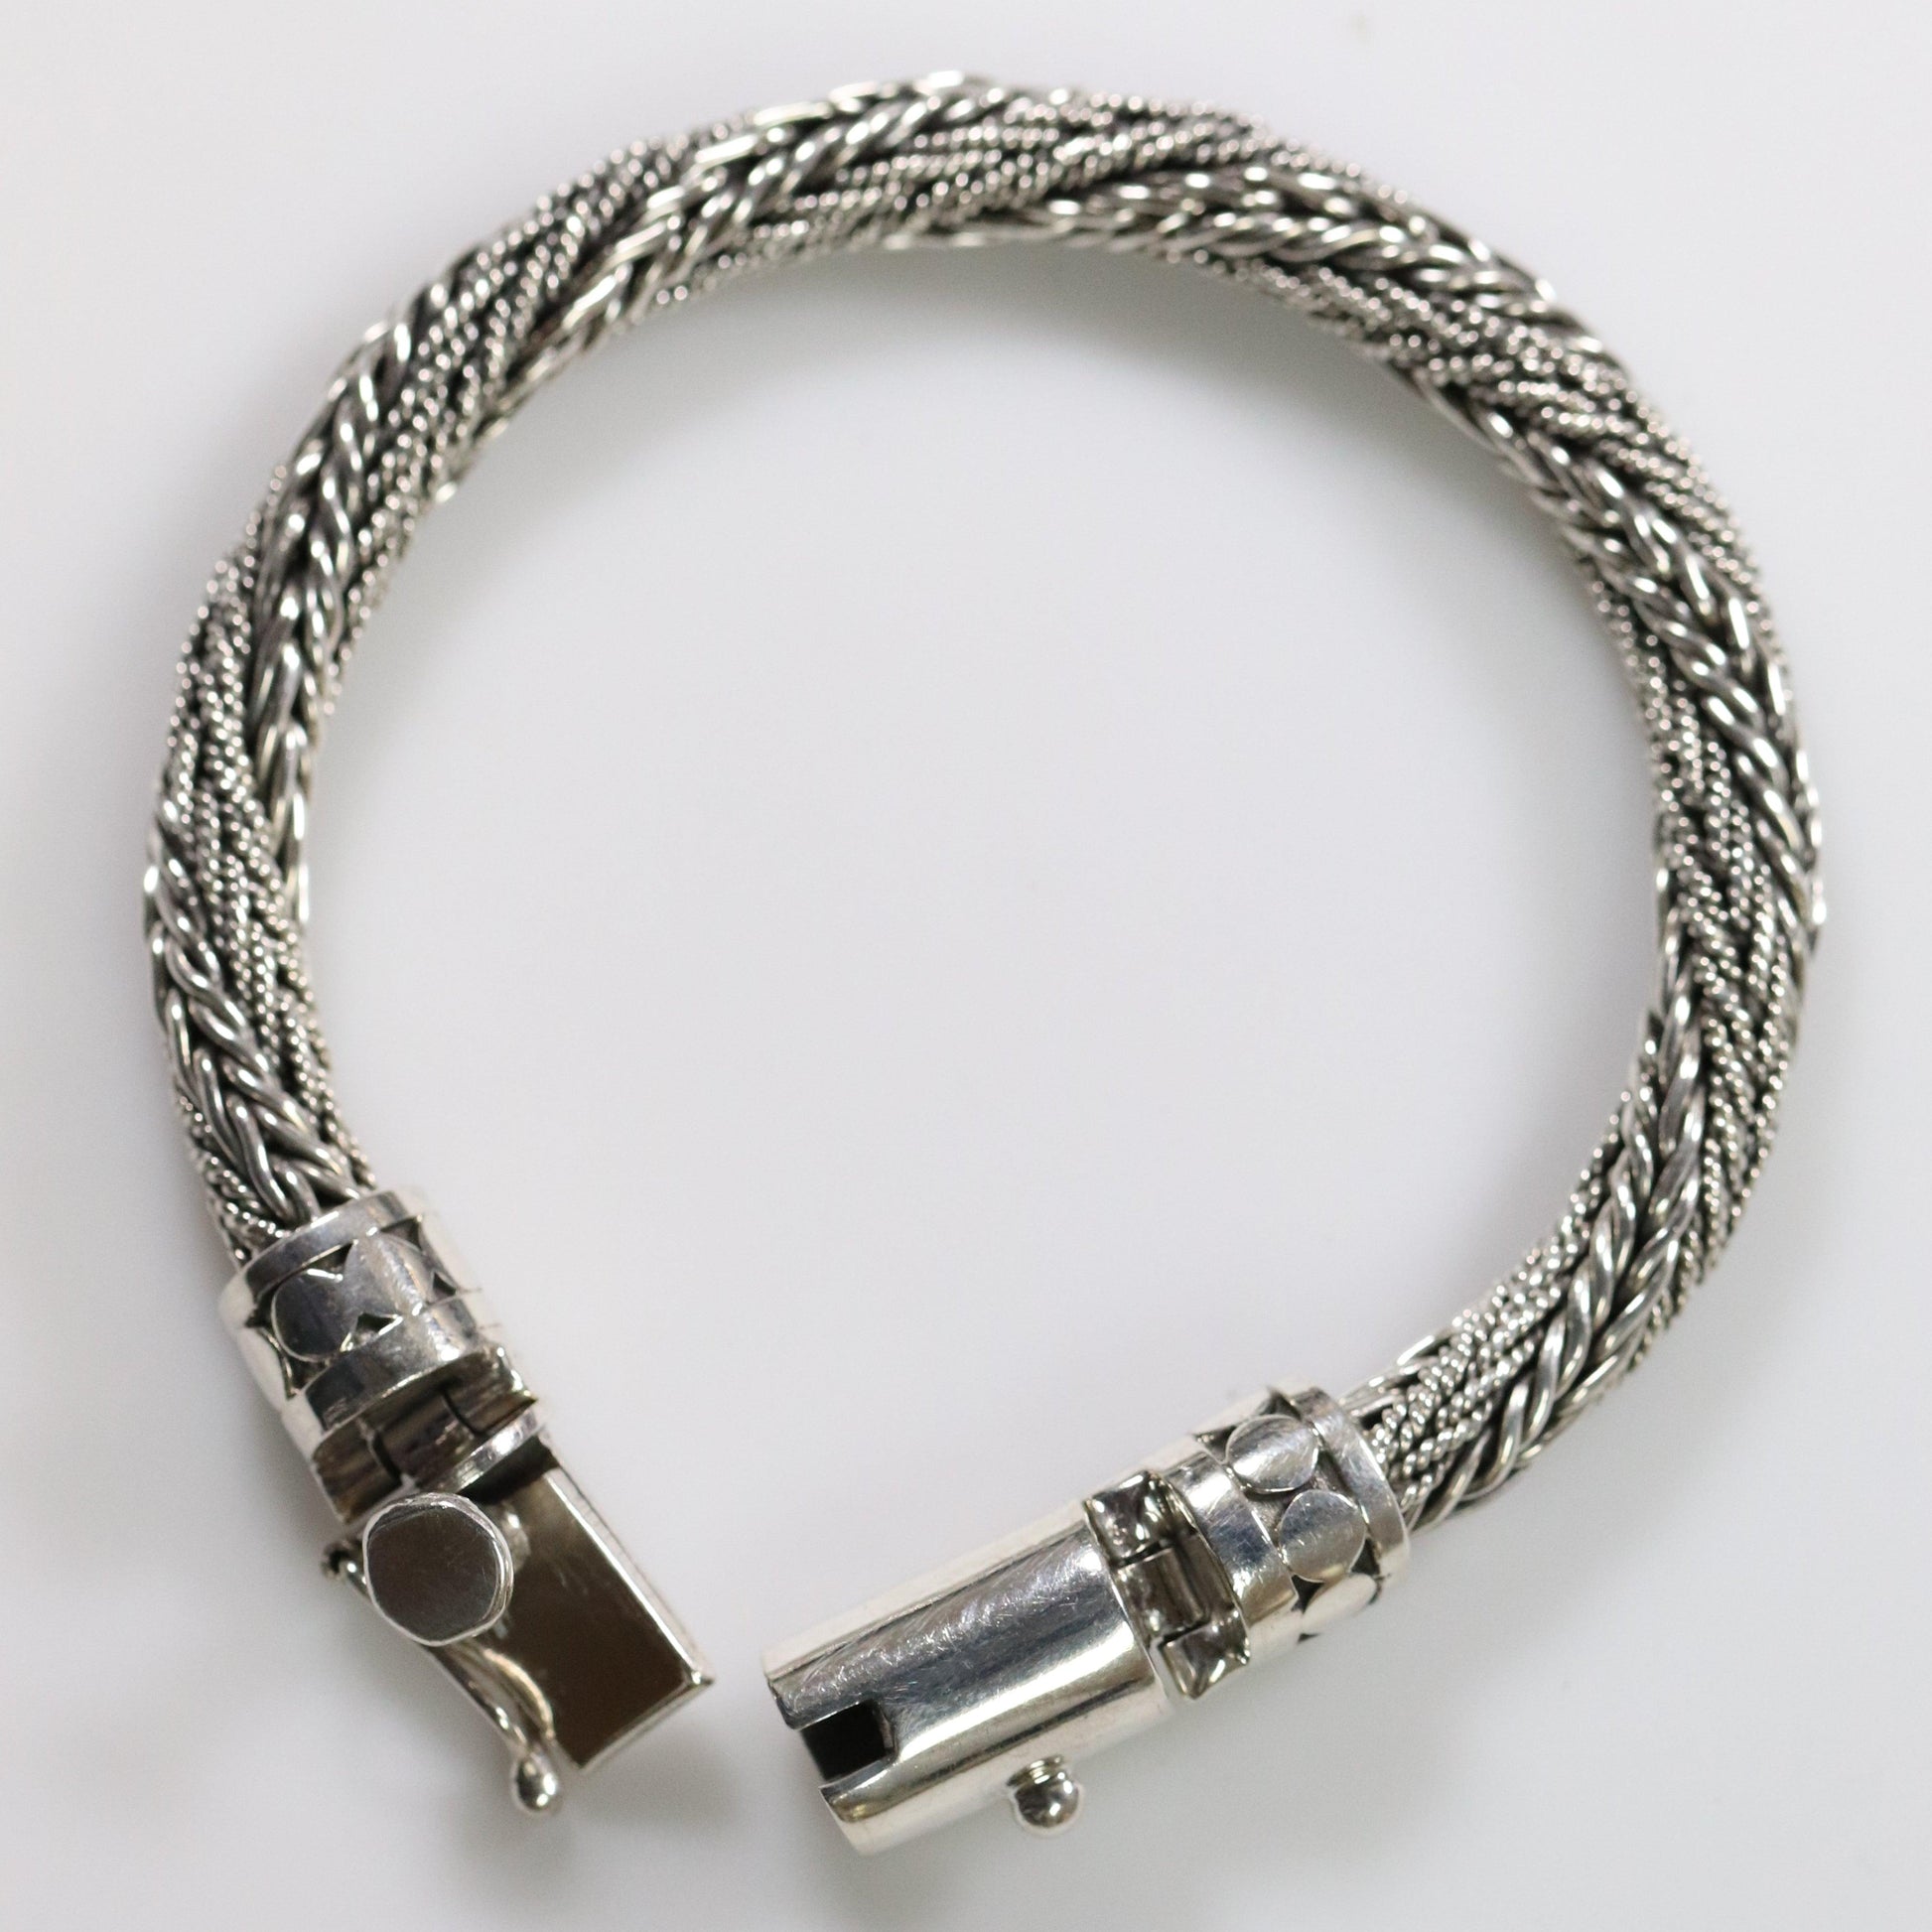 Vintage Modernist Silver Jewelry | Twisted Wheat Link Bracelet - Carmel Fine Silver Jewelry